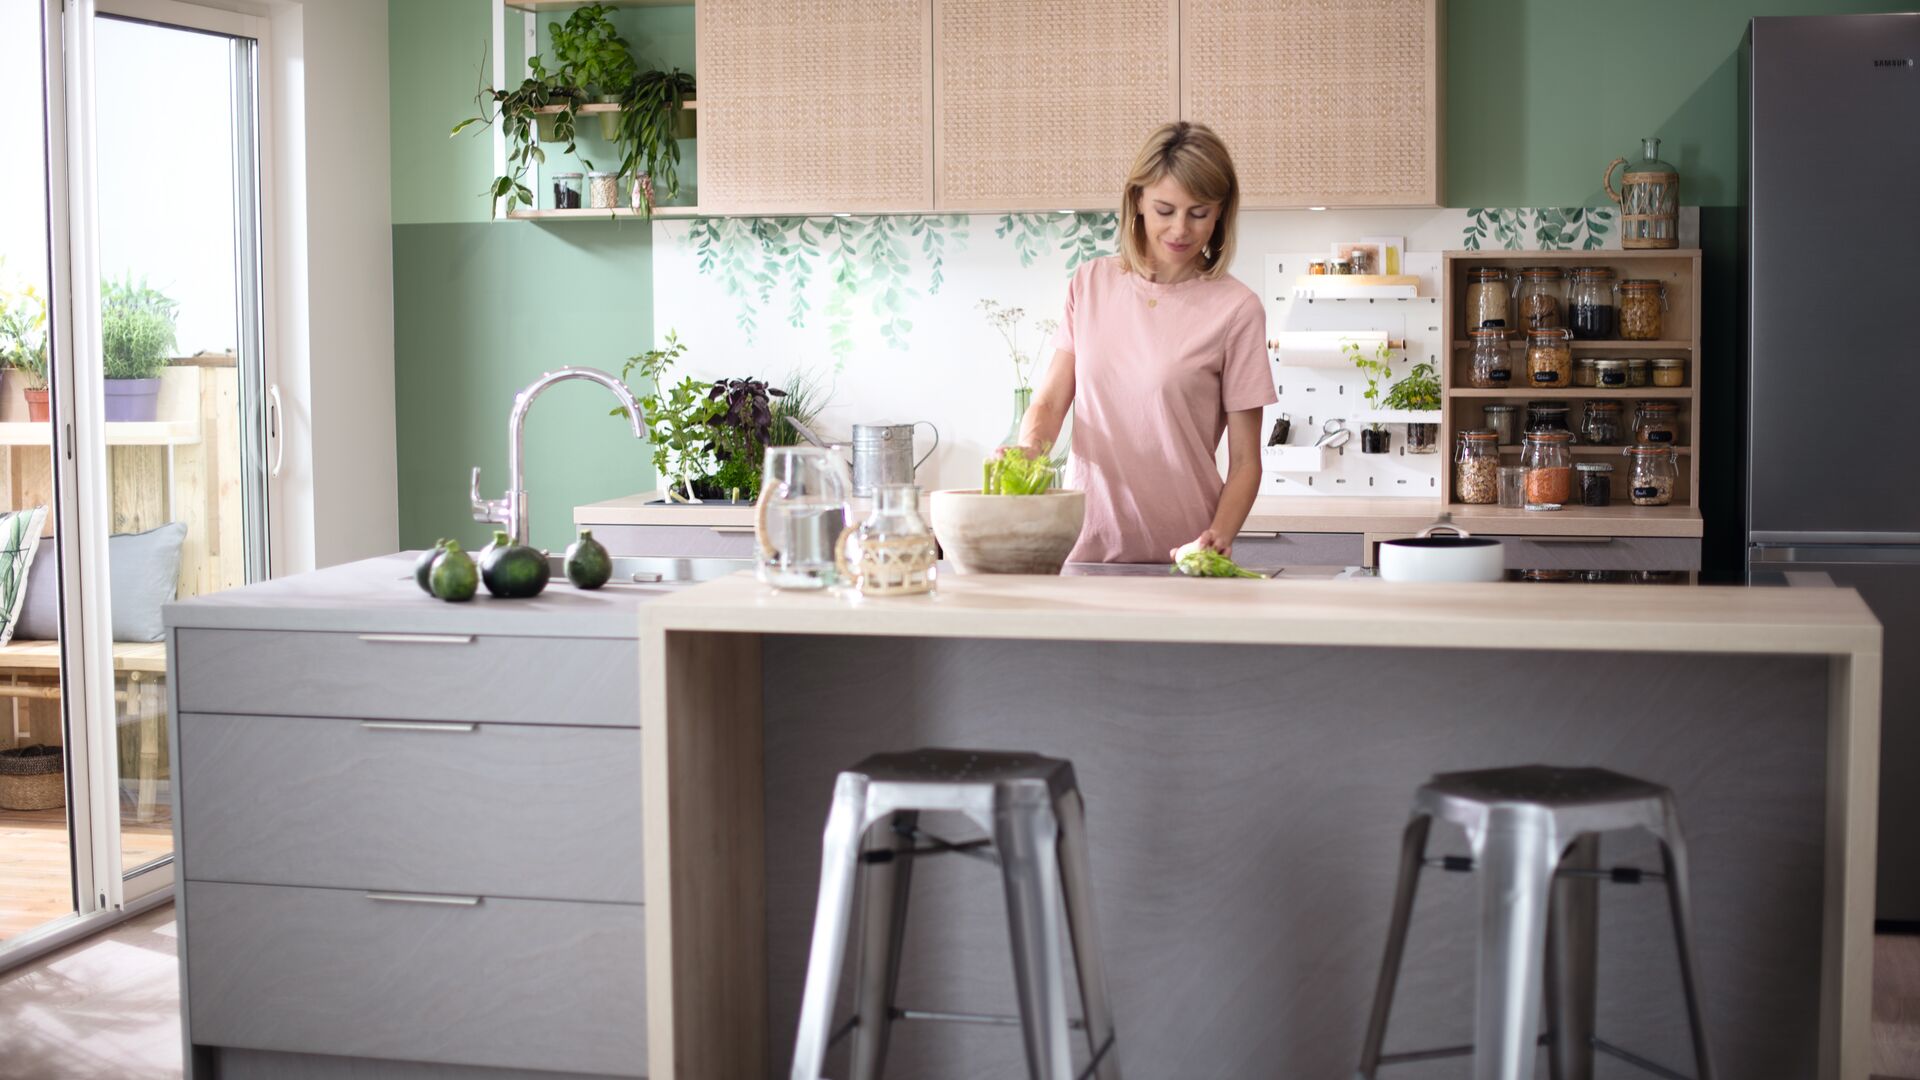 Envie d’adopter une jolie couleur green pour votre cuisine ? Découvrez nos conseils pour bien associer le vert de votre espace en fonction du style désiré.